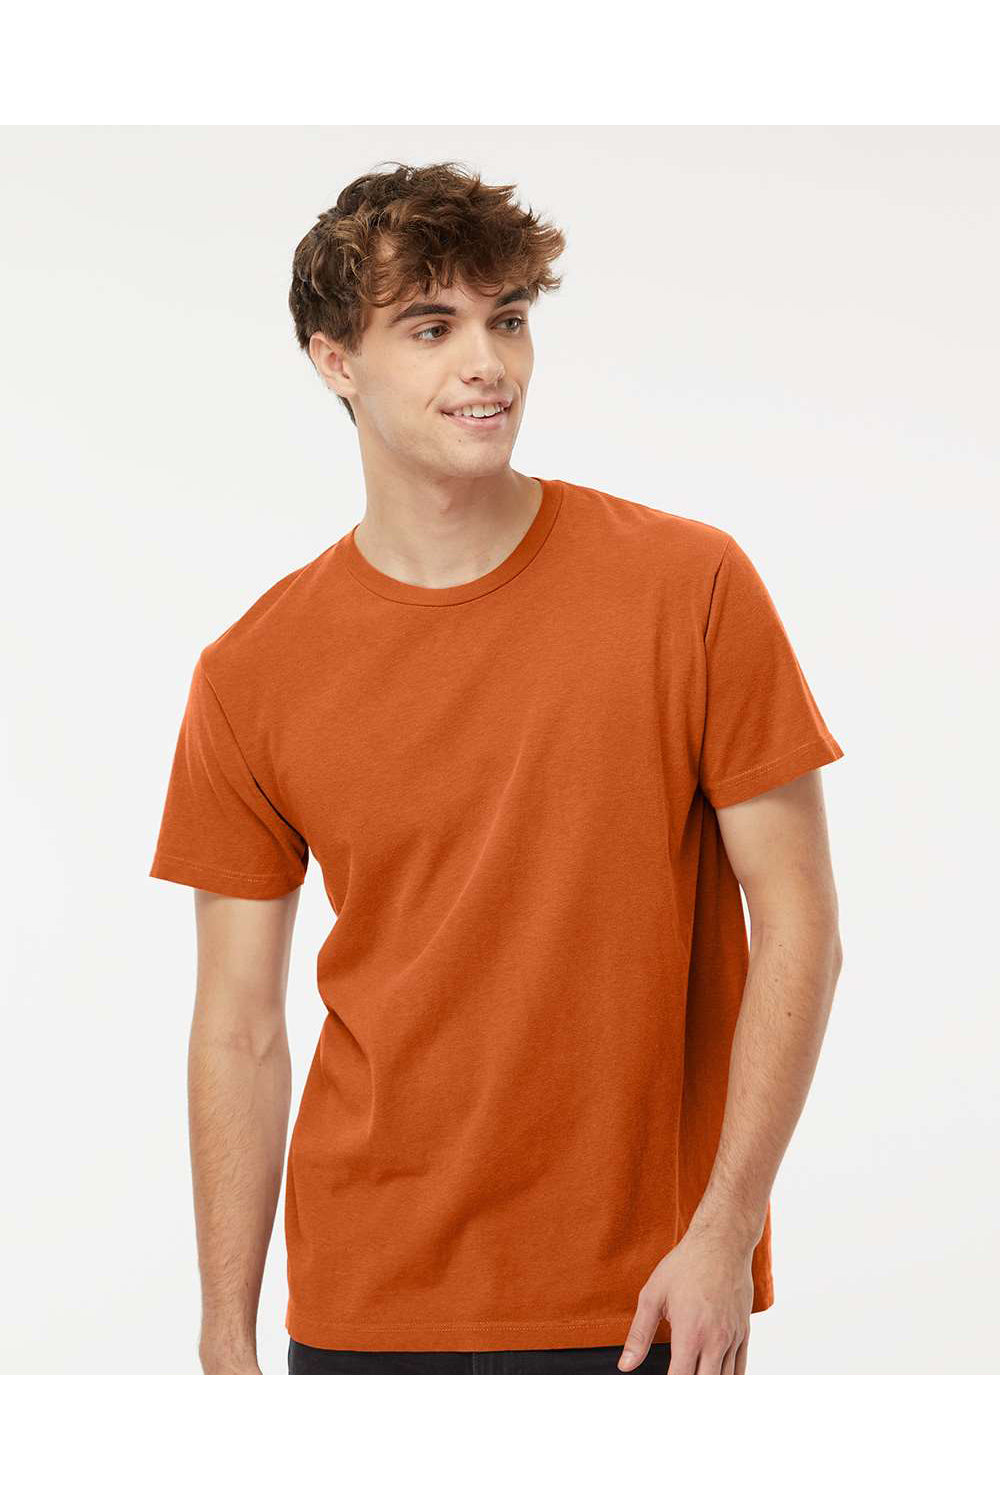 M&O 6500M Mens Vintage Garment Dyed Short Sleeve Crewneck T-Shirt Burnt Orange Model Front